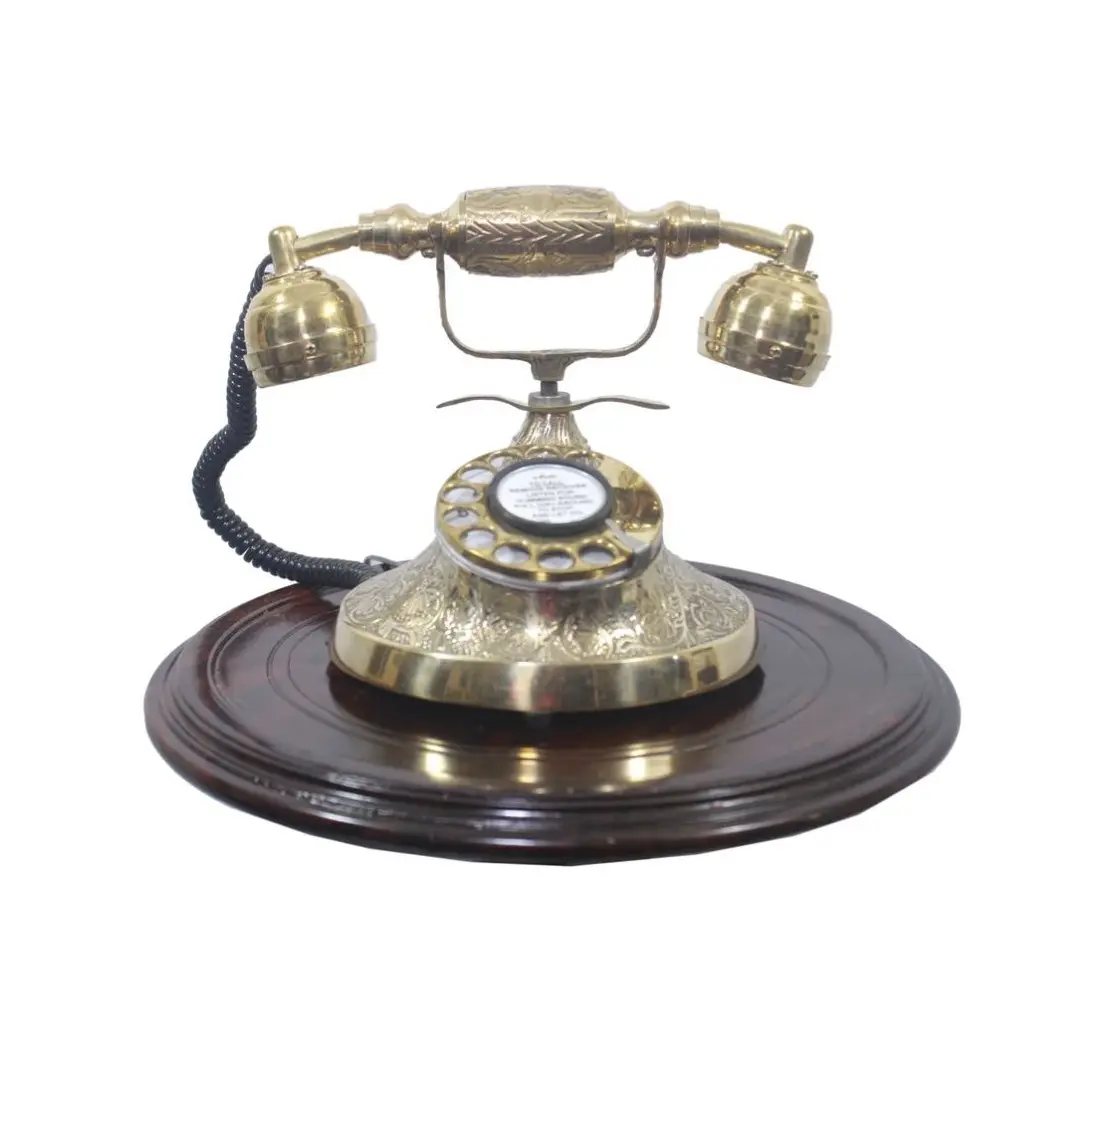 Teléfono antiguo de lujo real para oficina decoración del hogar regalo sala de estar Interior antiguo teléfono Retro Decoración de mesa